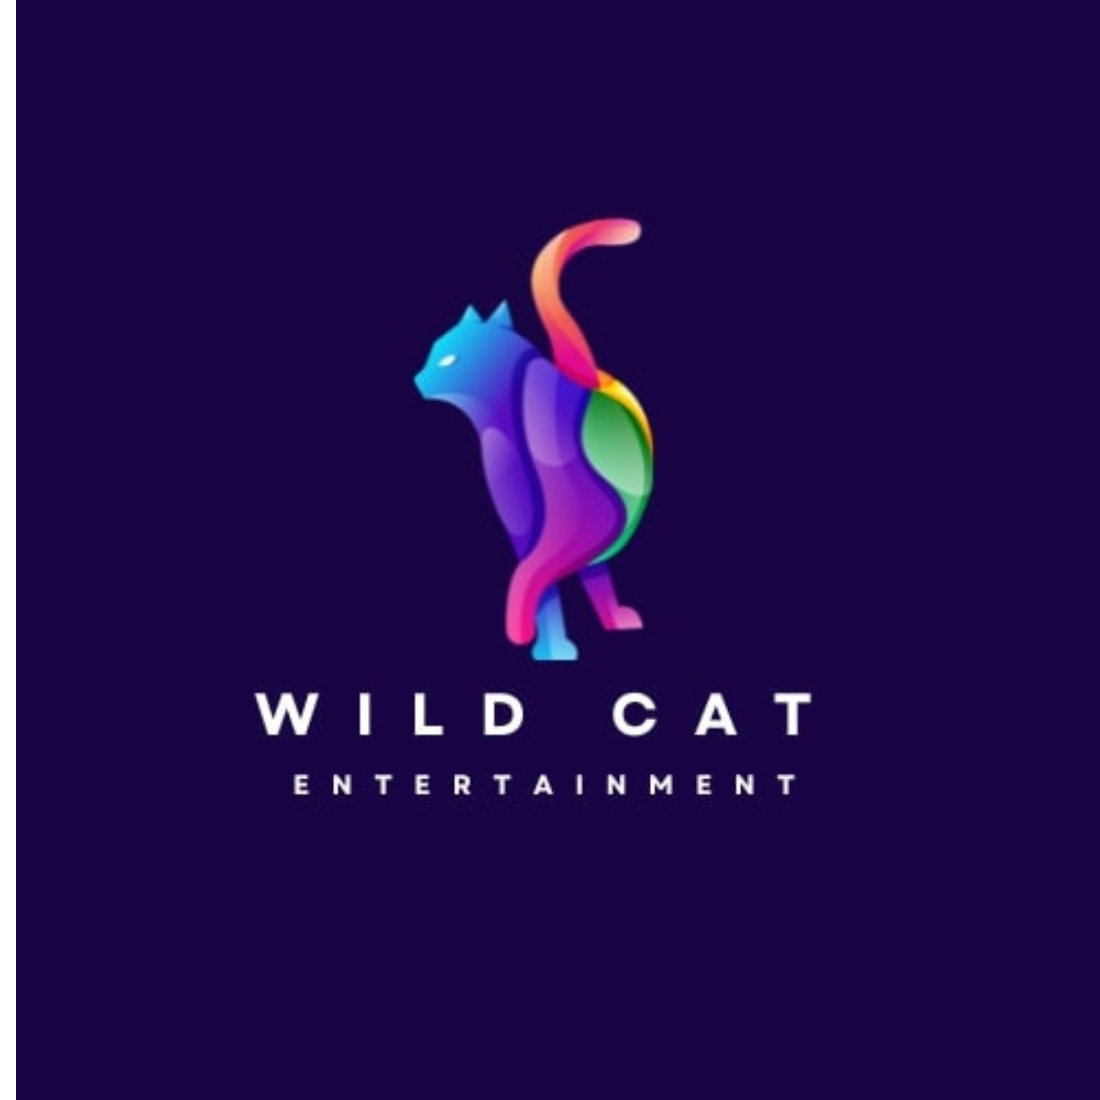 Wild Cat Logo cover image.